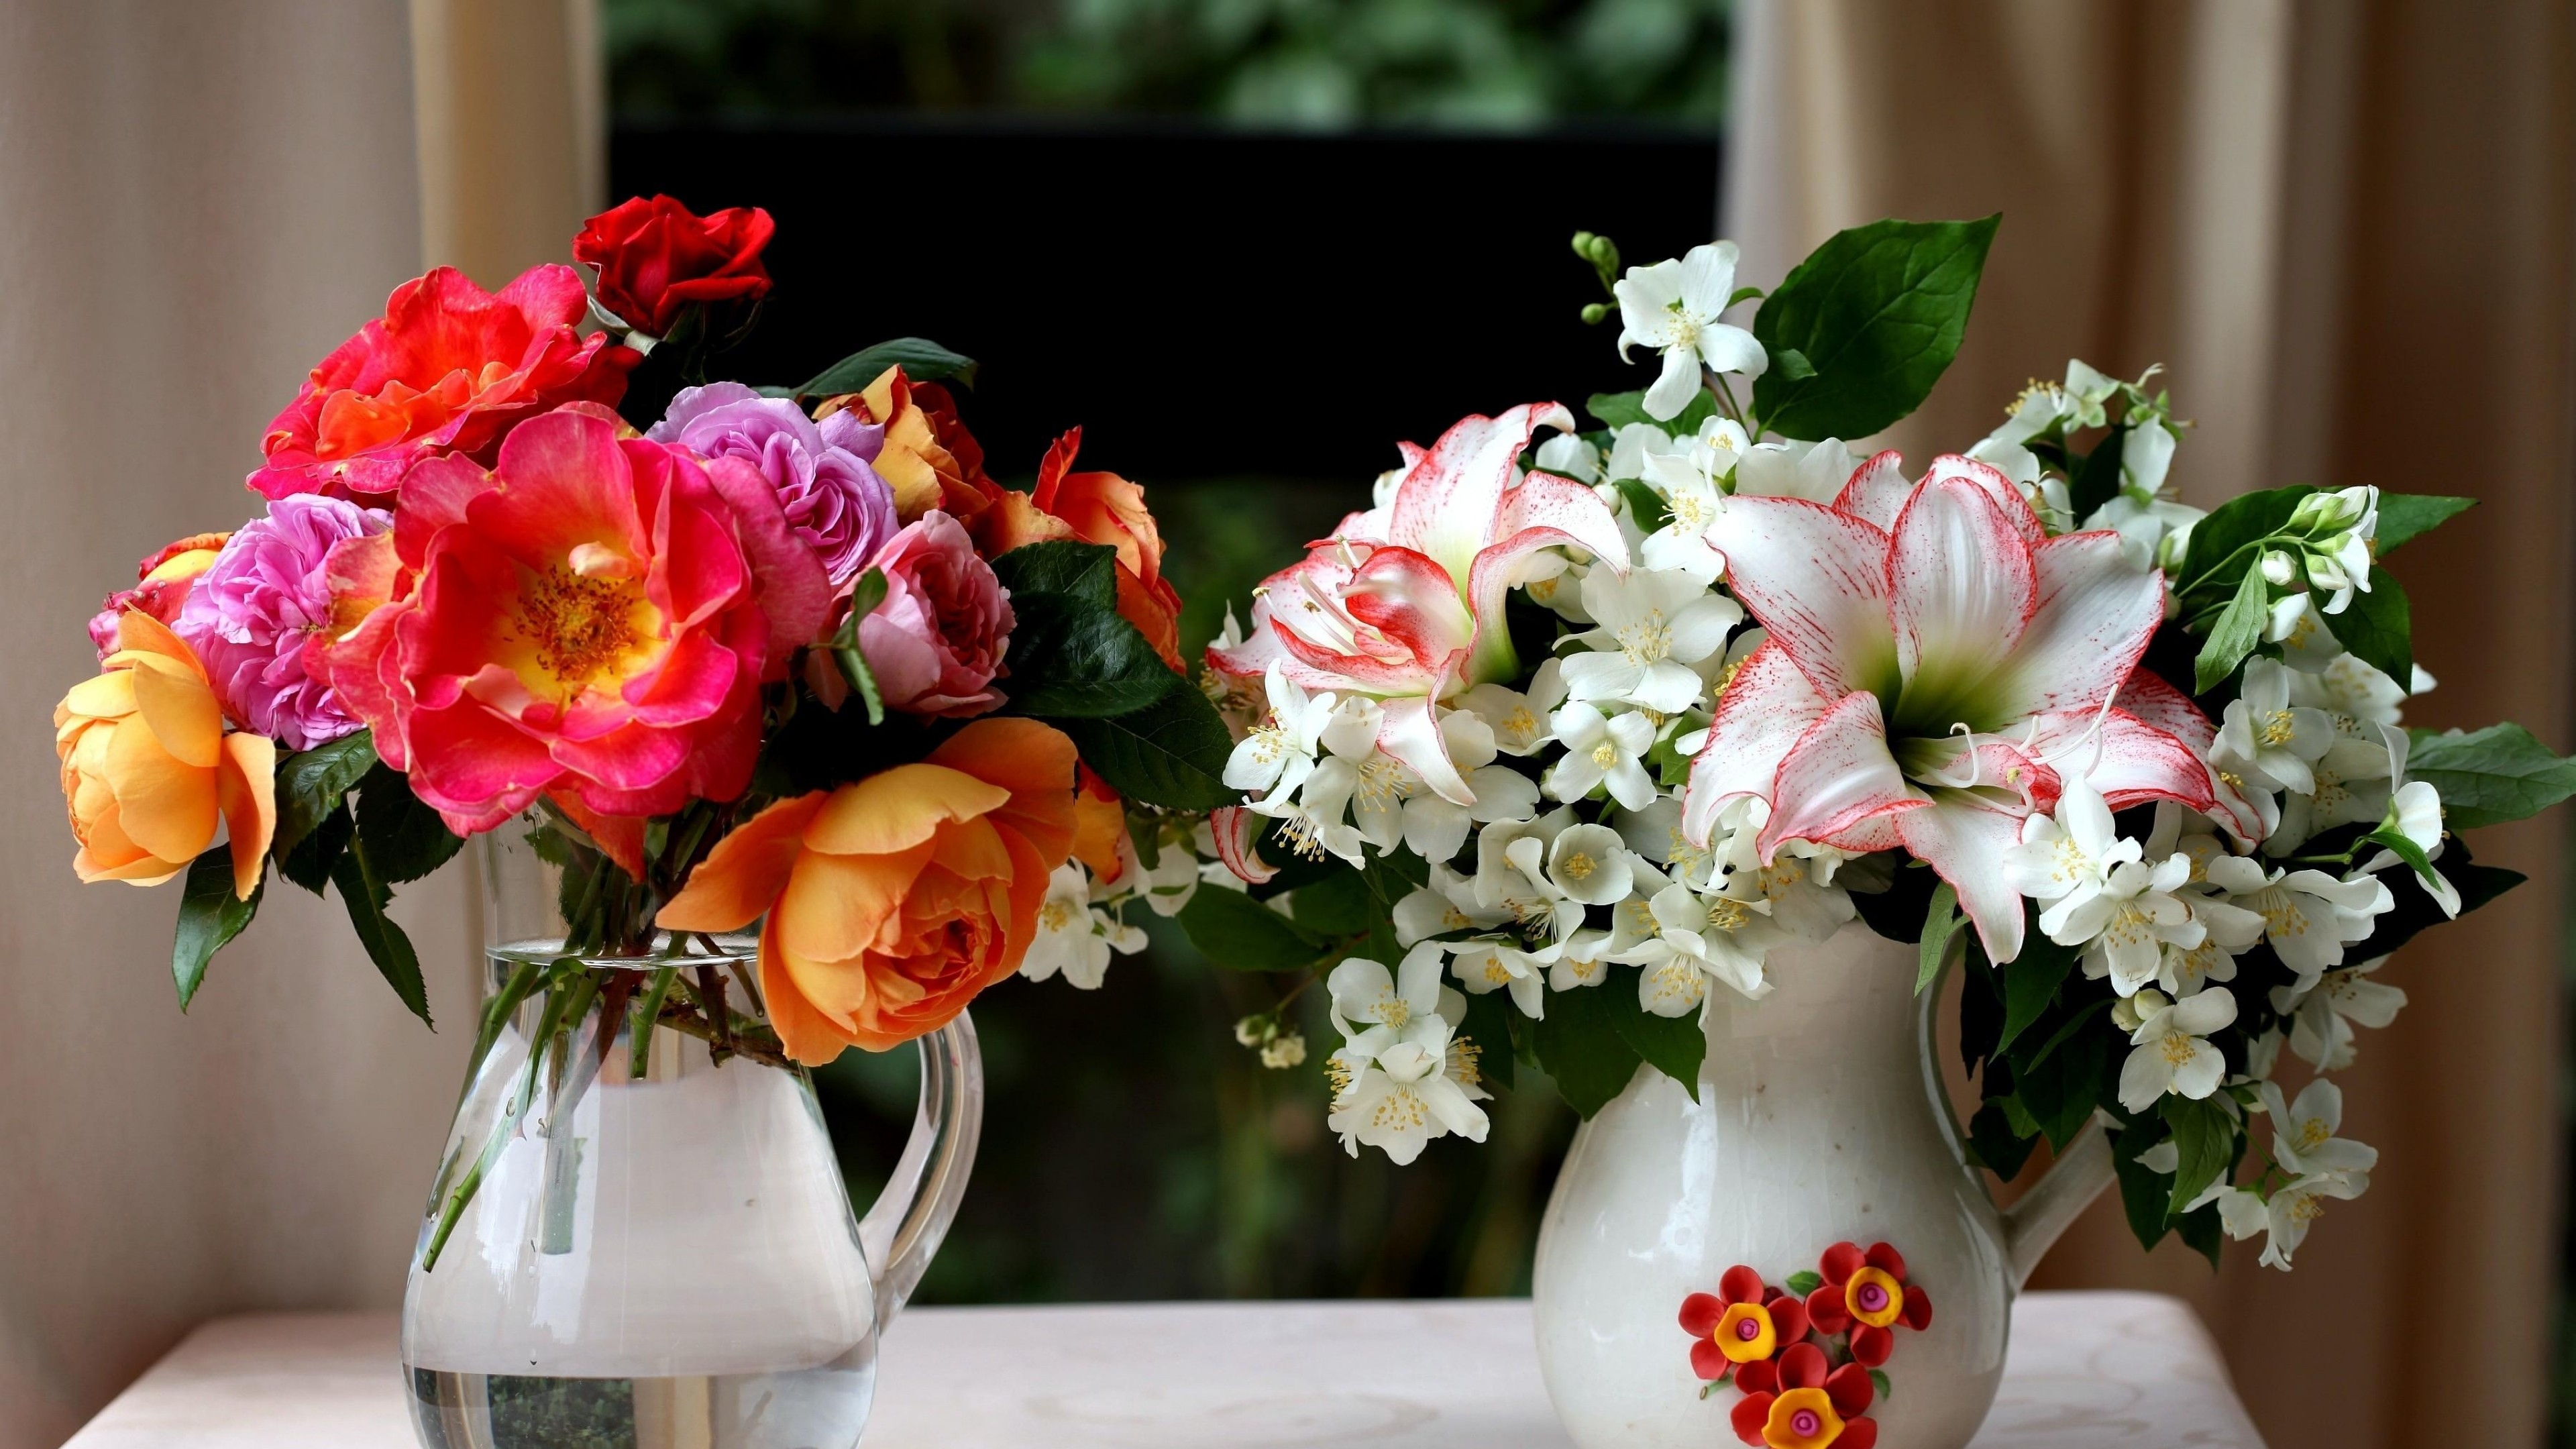 Картинка с цветами на столе. Цветы в вазе. Букеты в вазах. Цветы в прозрачной вазе.